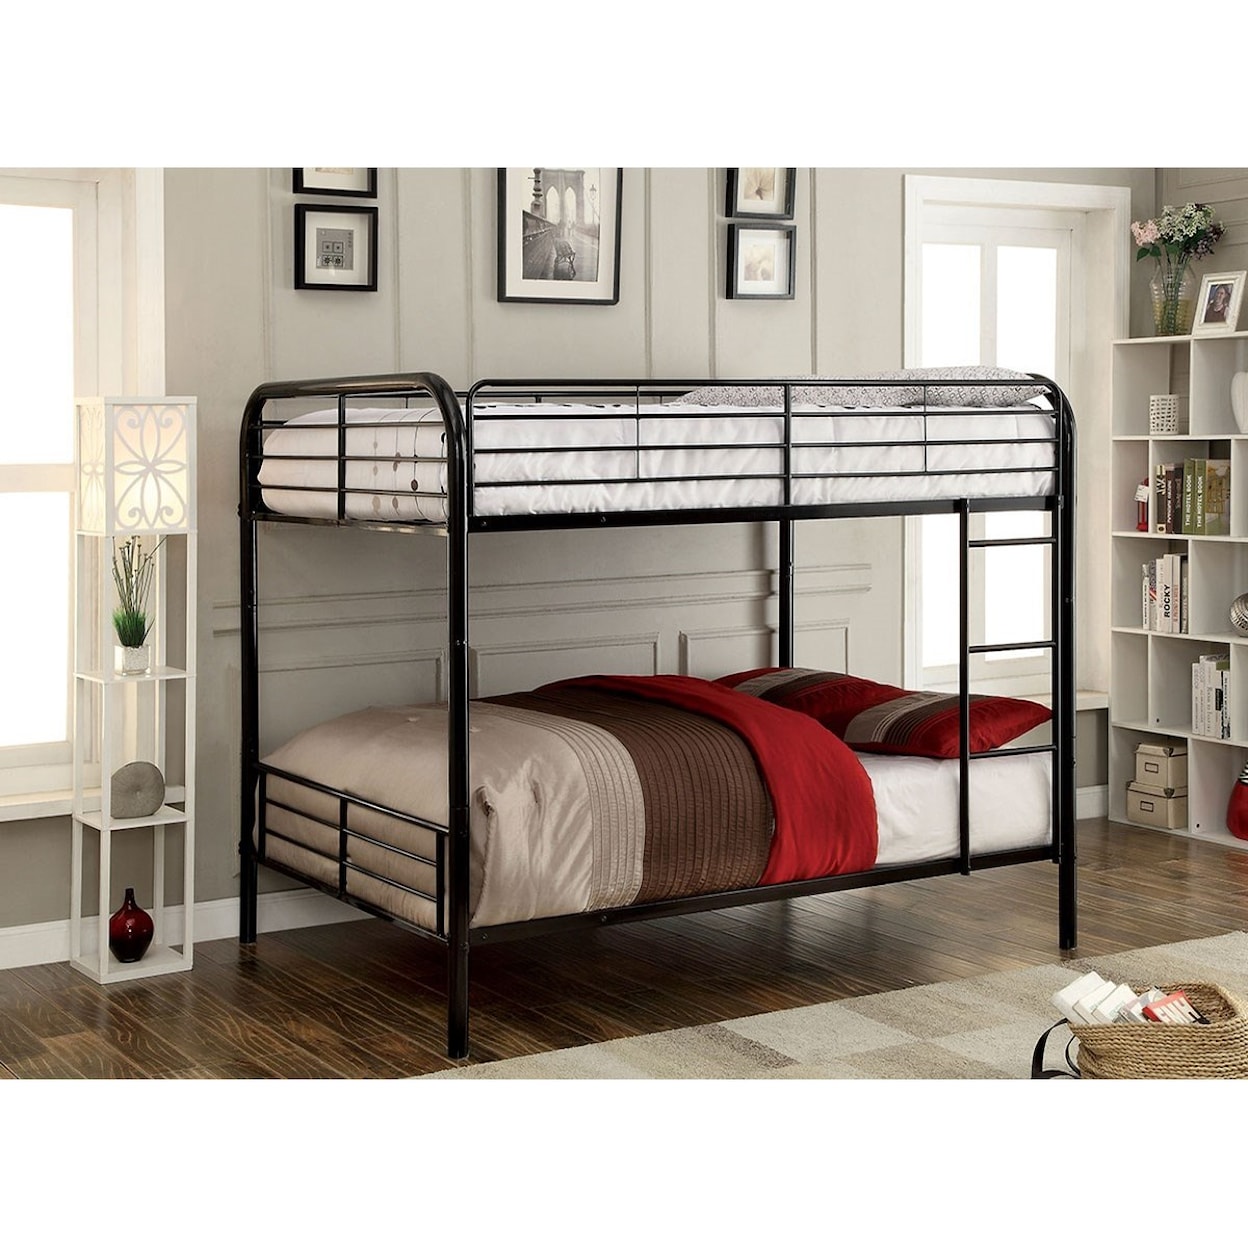 Furniture of America Brocket Metal Full/Full Bunk Bed